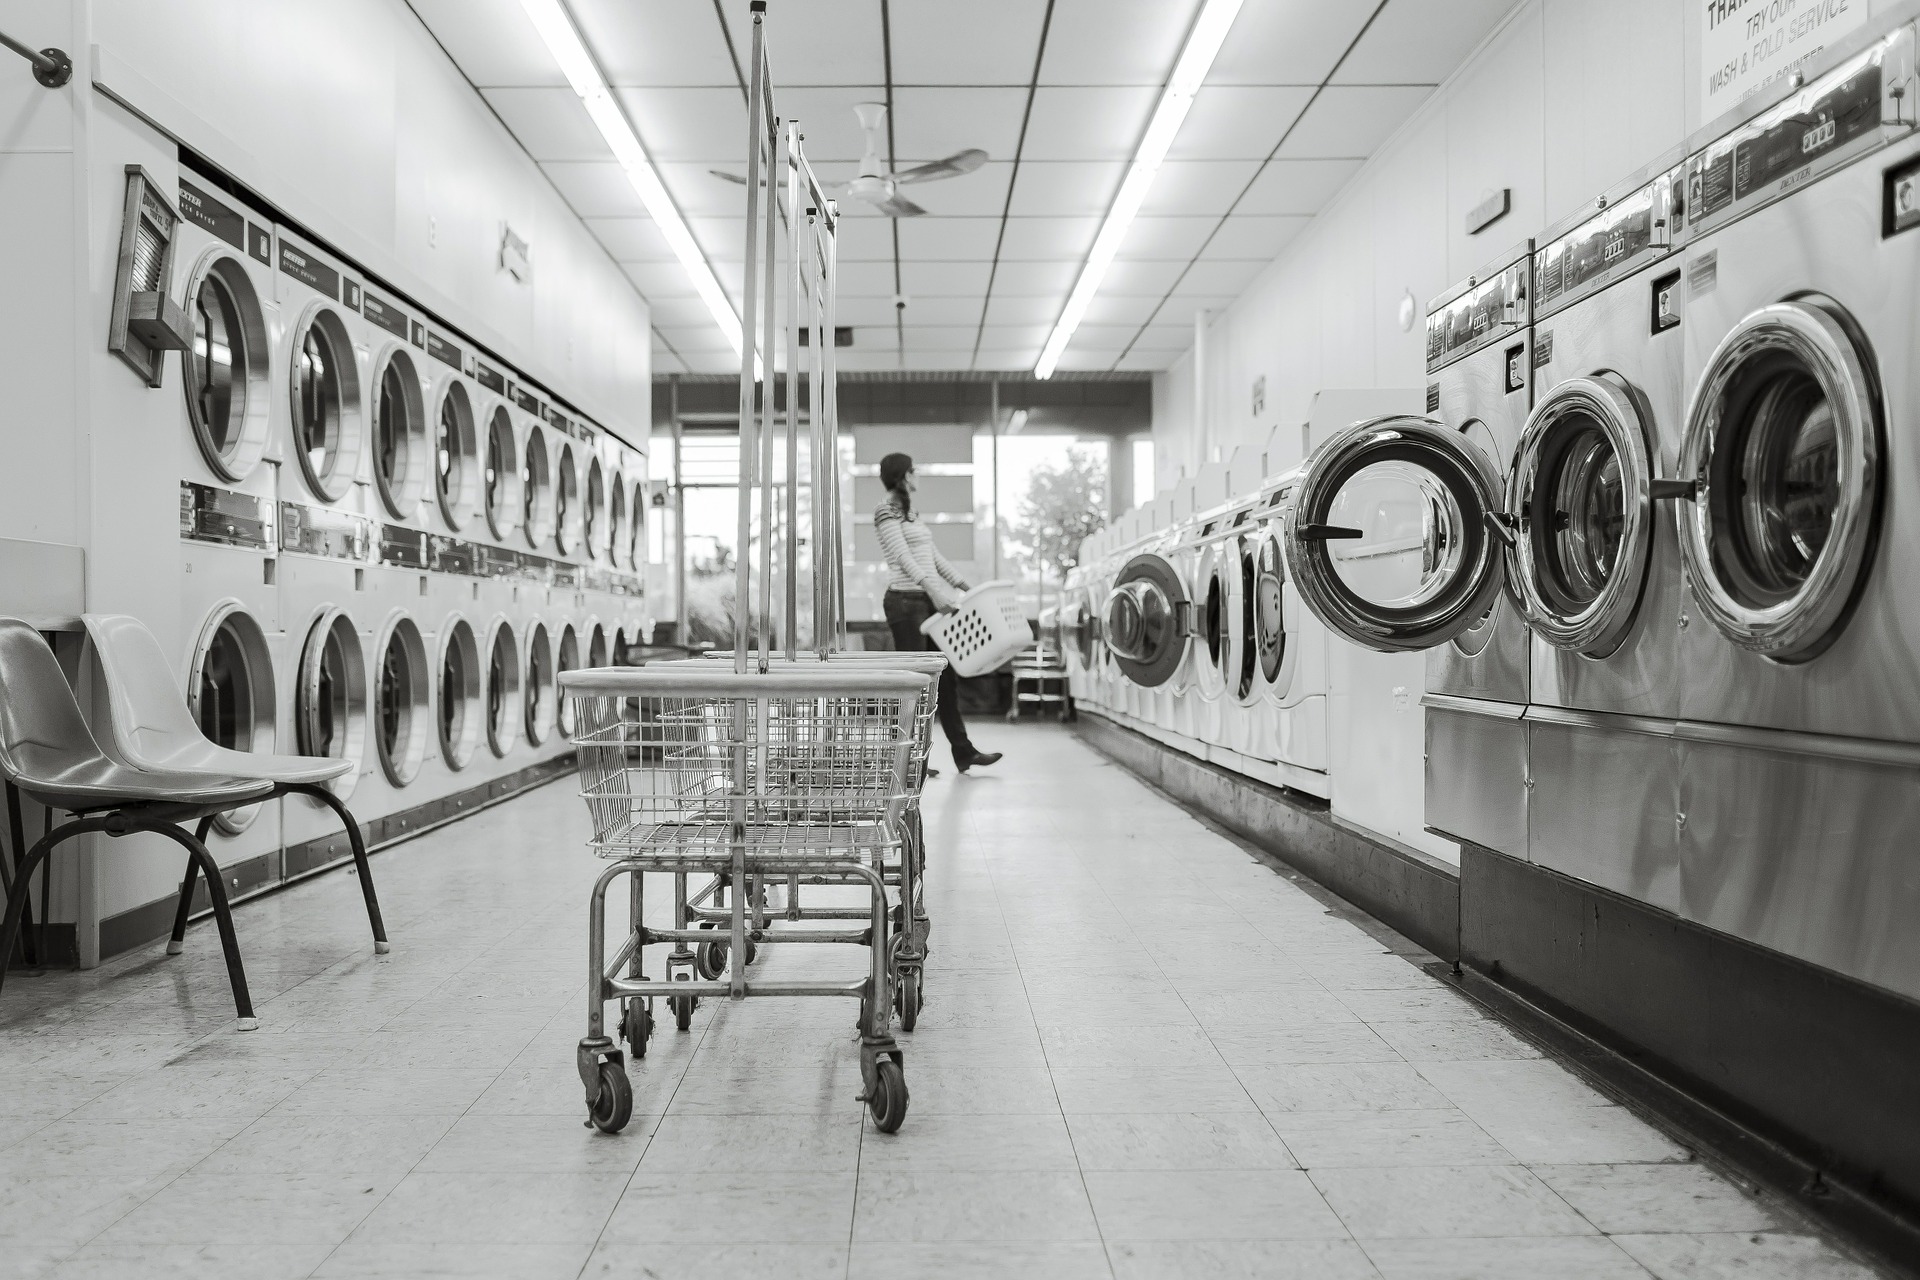 Samoobslužné prádelny v Česku nachází stále více příznivců